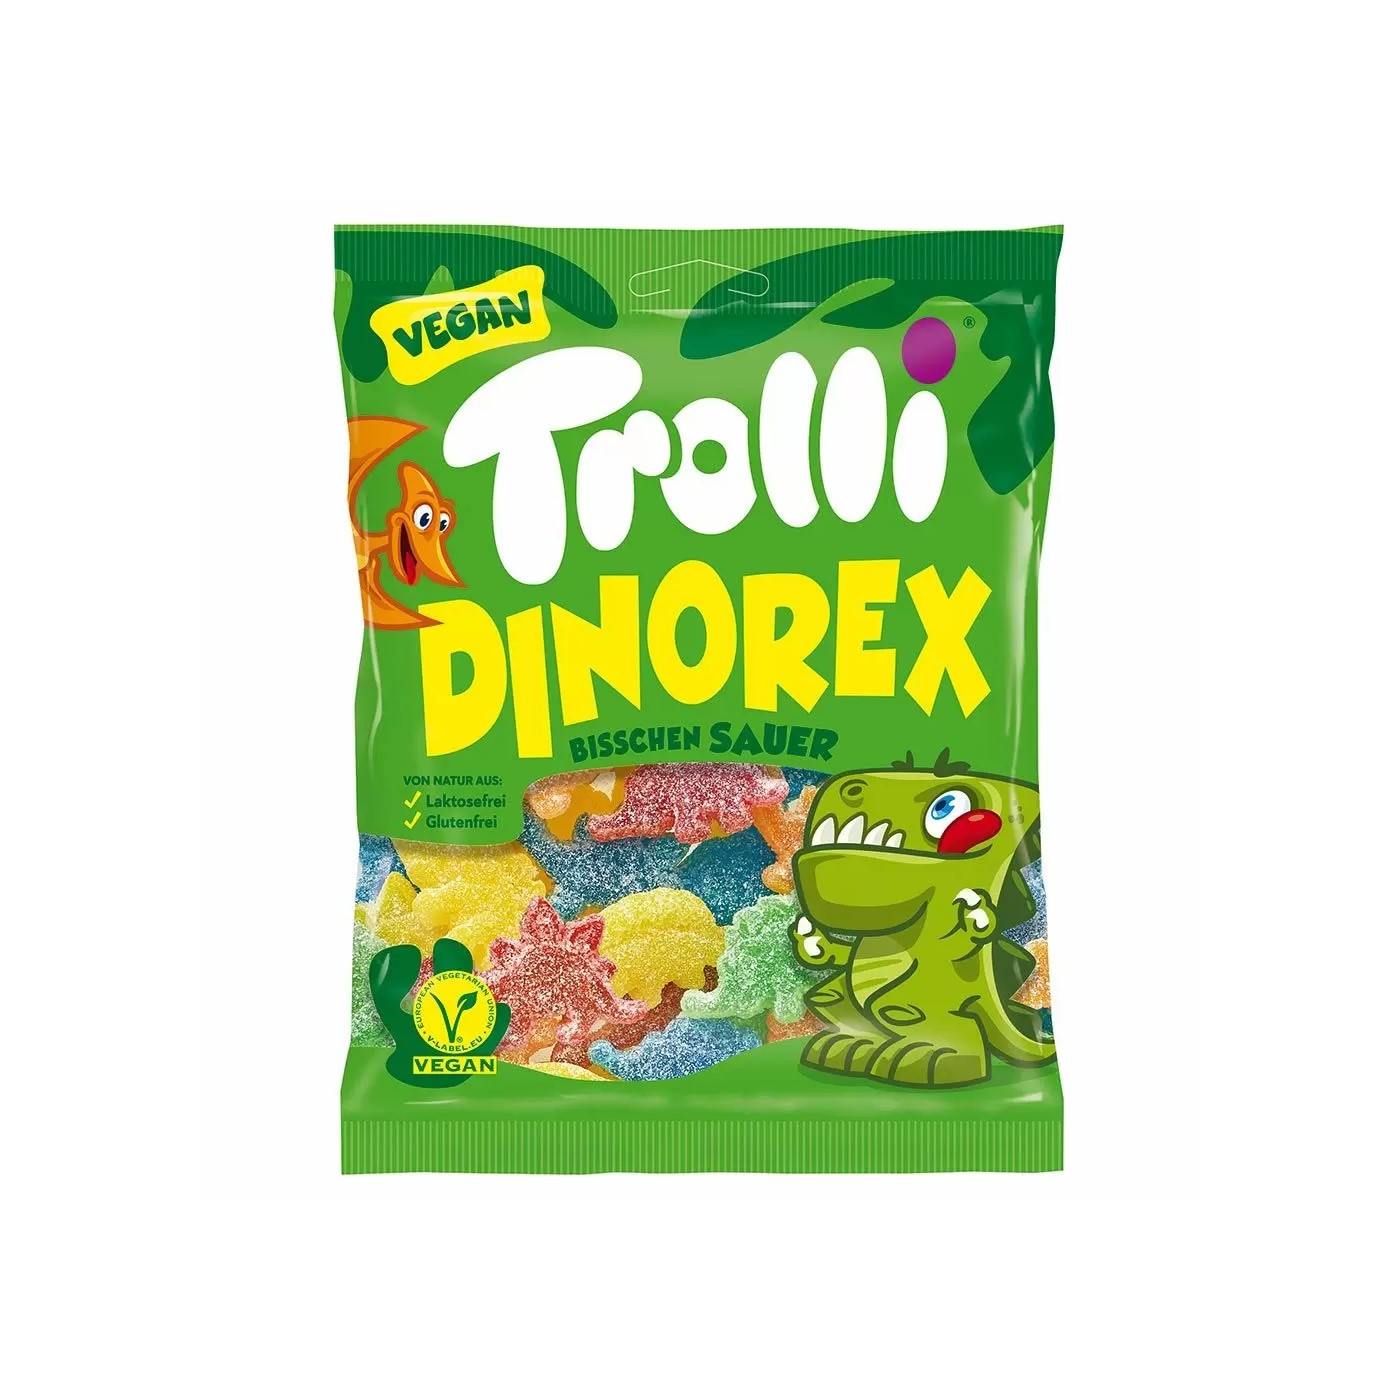 Trolli Dinorex 150g